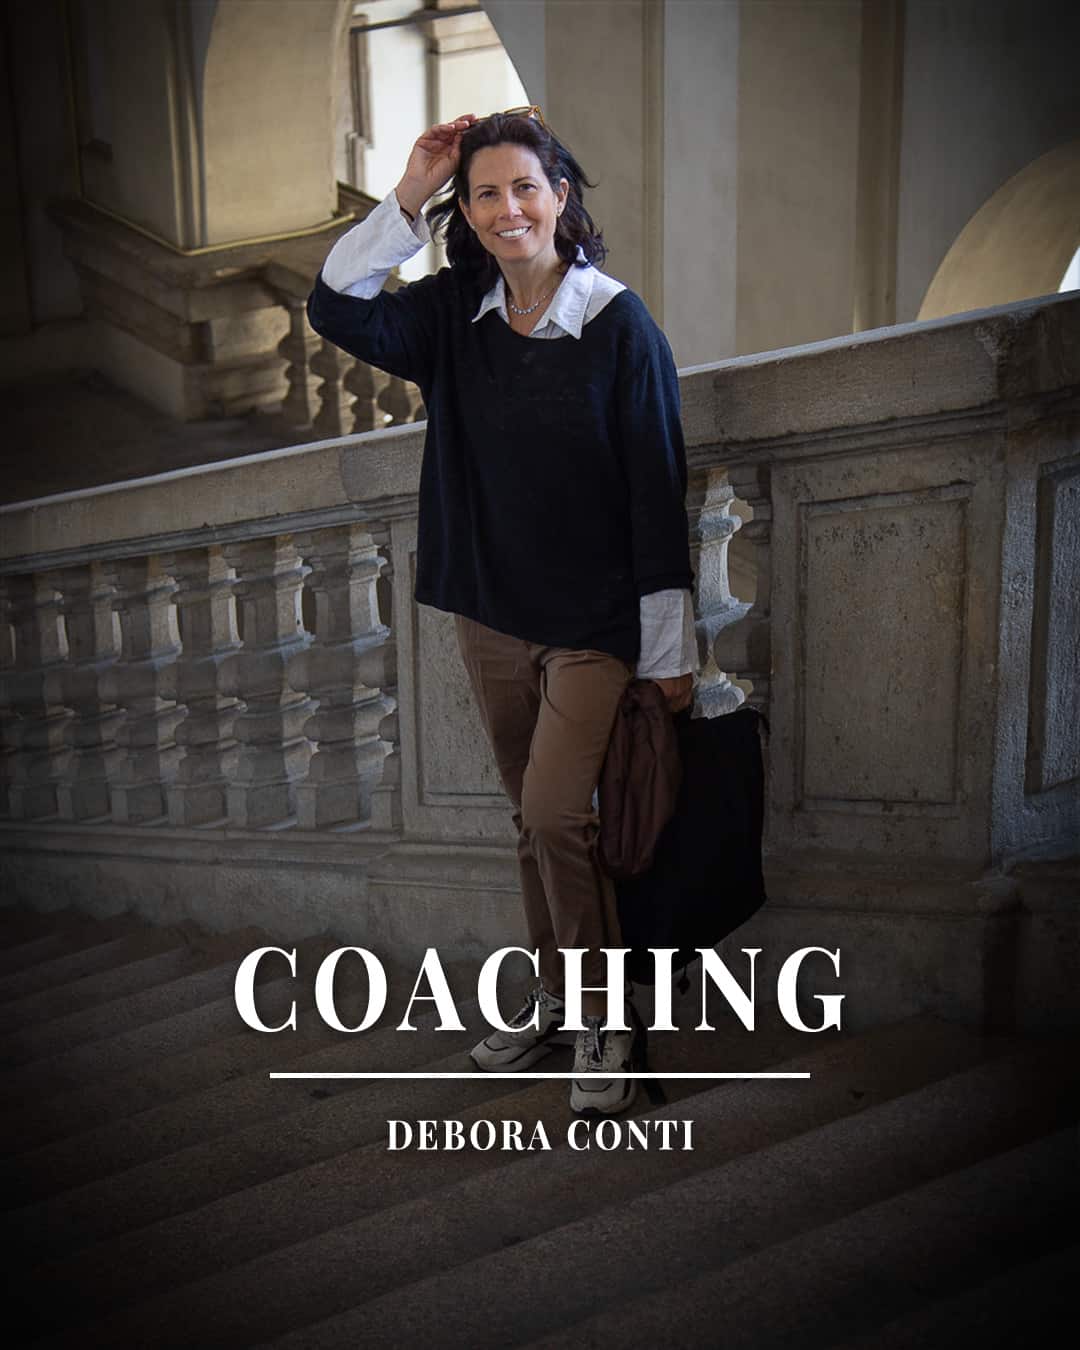 Debora Conti è autrice best seller, coach professionista dal 2005 e formatrice. Trainer di PNL per la Society of NLP, laureata in psicologia, operatrice KPMT (Yale Parenting Center) e facilitatrice Positive Discipline.